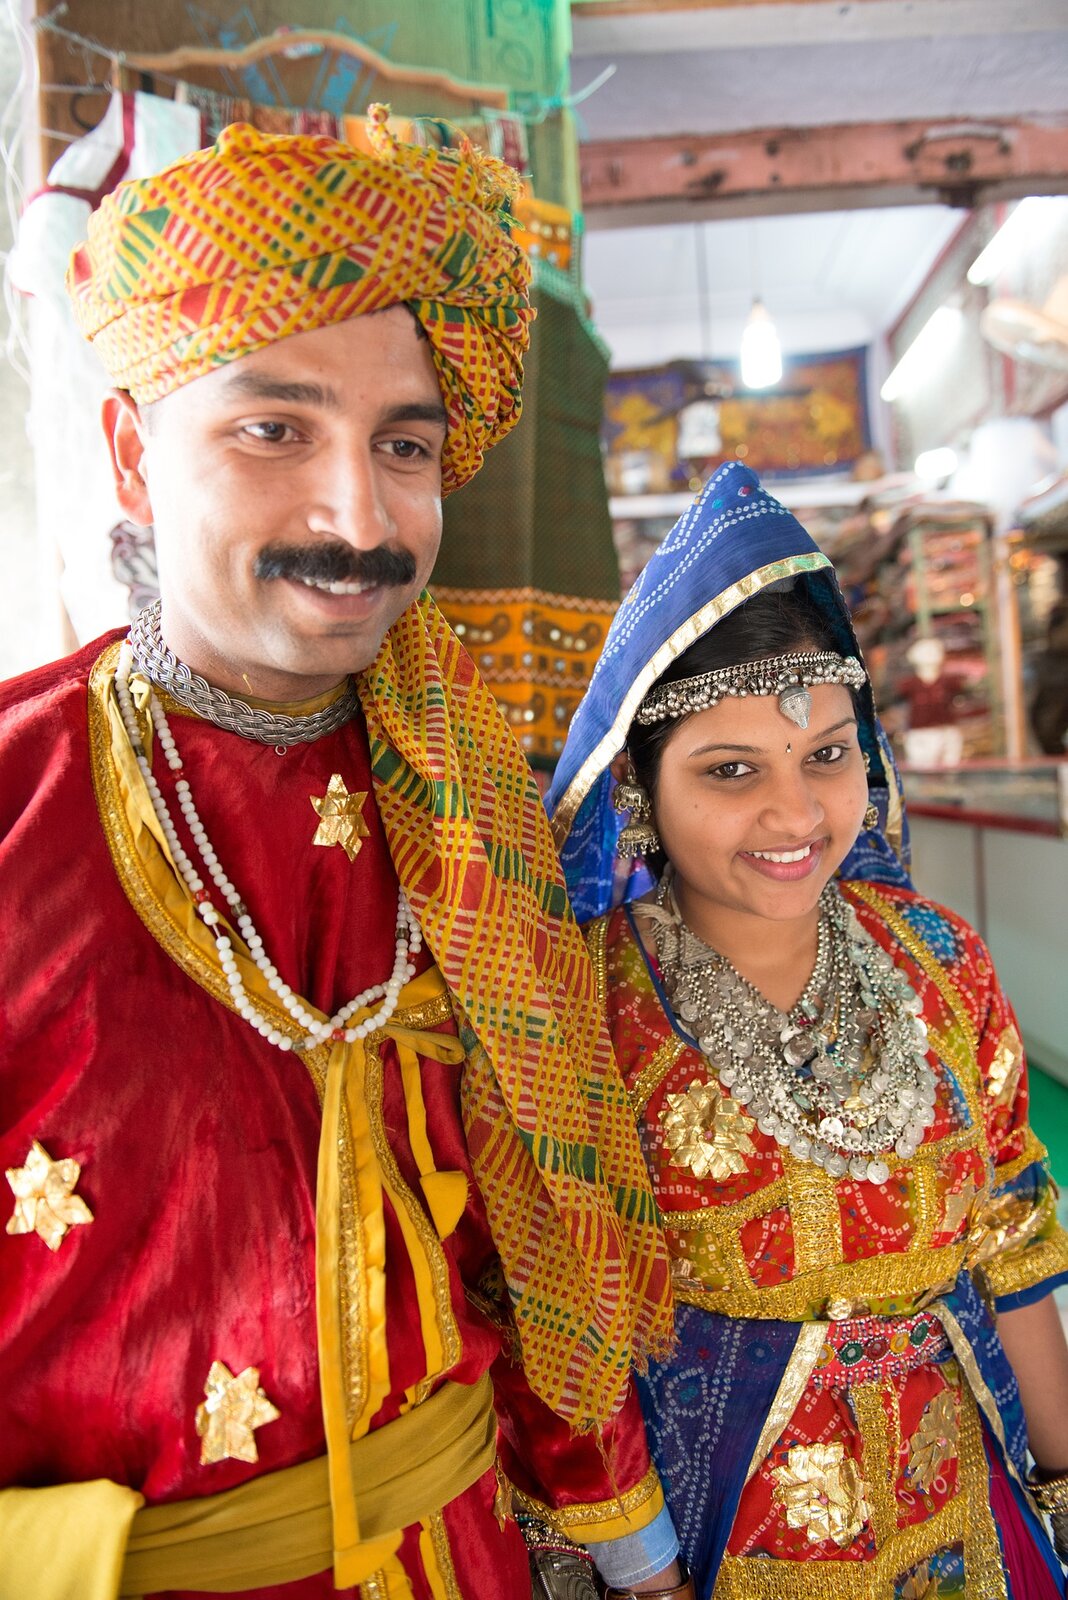 Zdjęcie przedstawia małżeństwo pochodzące z Indii. Ubrani są w ludowe stroje. Mężczyzna ma na głowie turban, kobieta chustę oraz opaskę na głowie z biżuterii i wiele naszyjników. Oboje mają bardzo kolorowe stroje. 